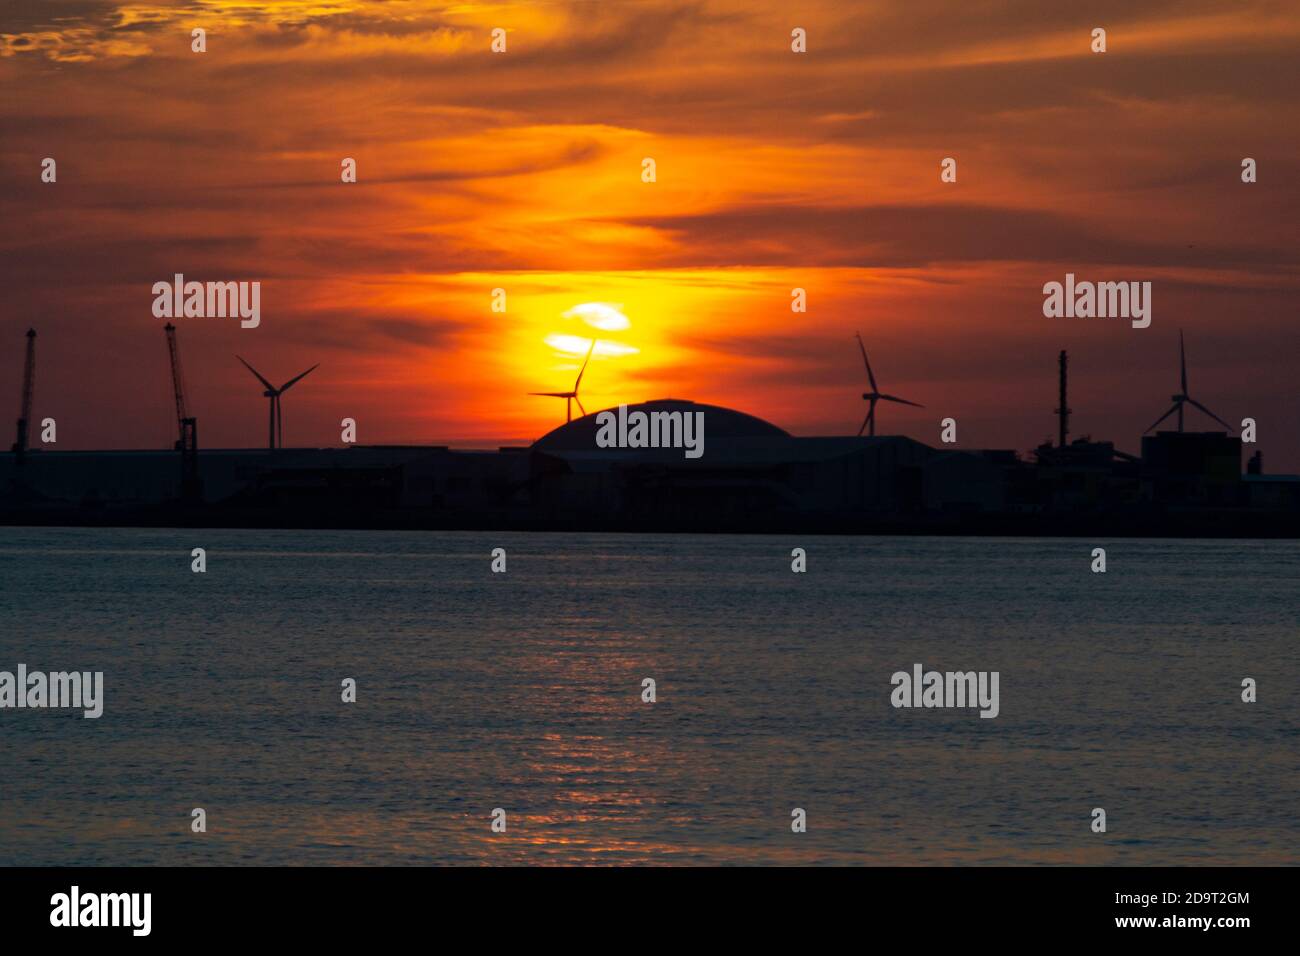 Puesta de sol de color naranja en el cielo en la playa de Getxo-Guecho. Municipio español situado en la costa del mar Cantábrico, en la provincia de Vizcaya Foto de stock